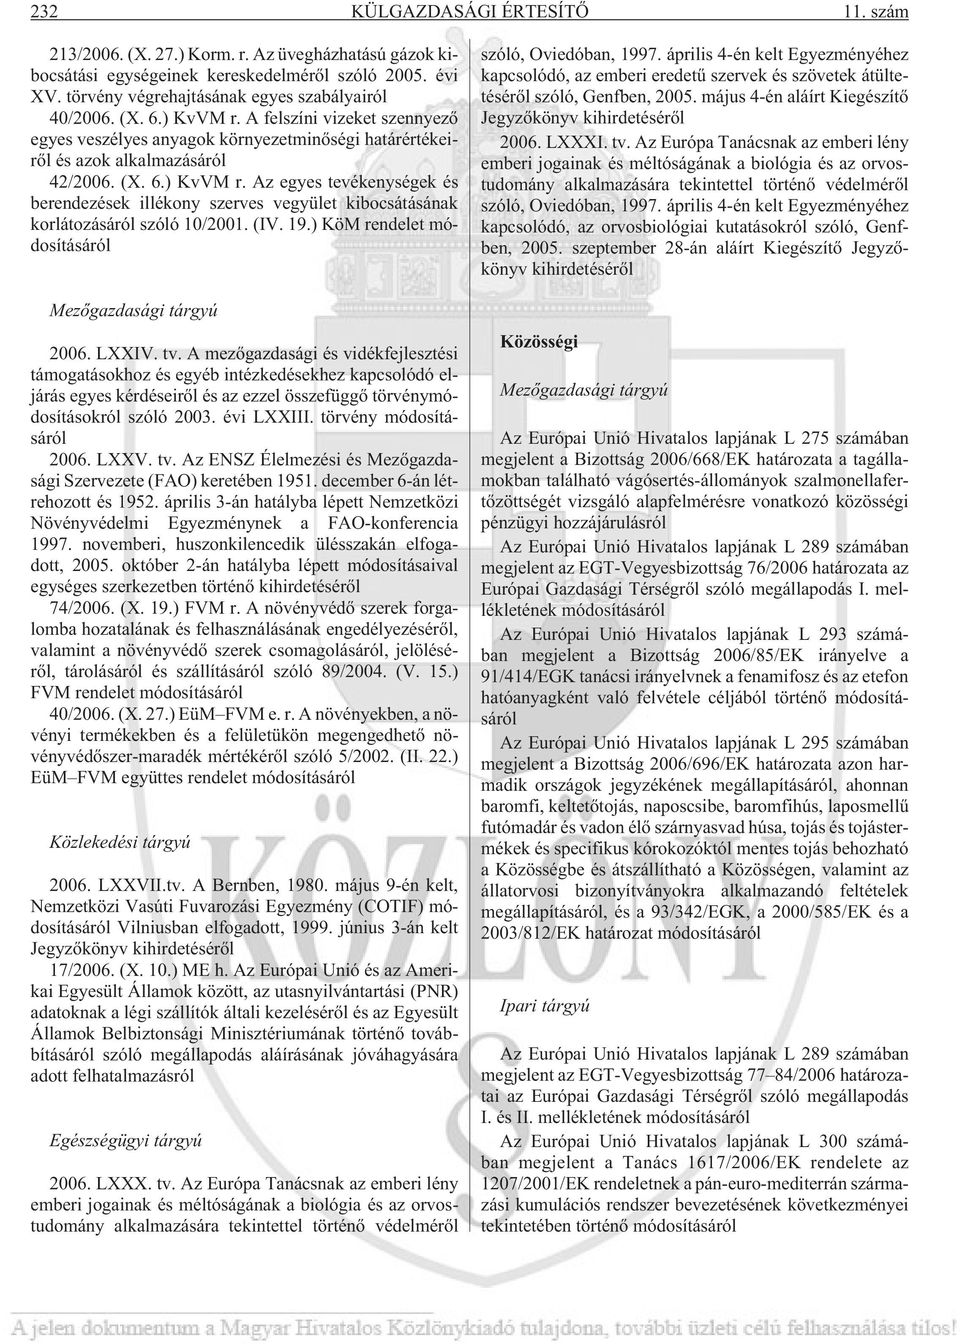 (IV. 19.) KöM rendelet módosításáról Mezõgazdasági tárgyú 2006. LXXIV. tv.